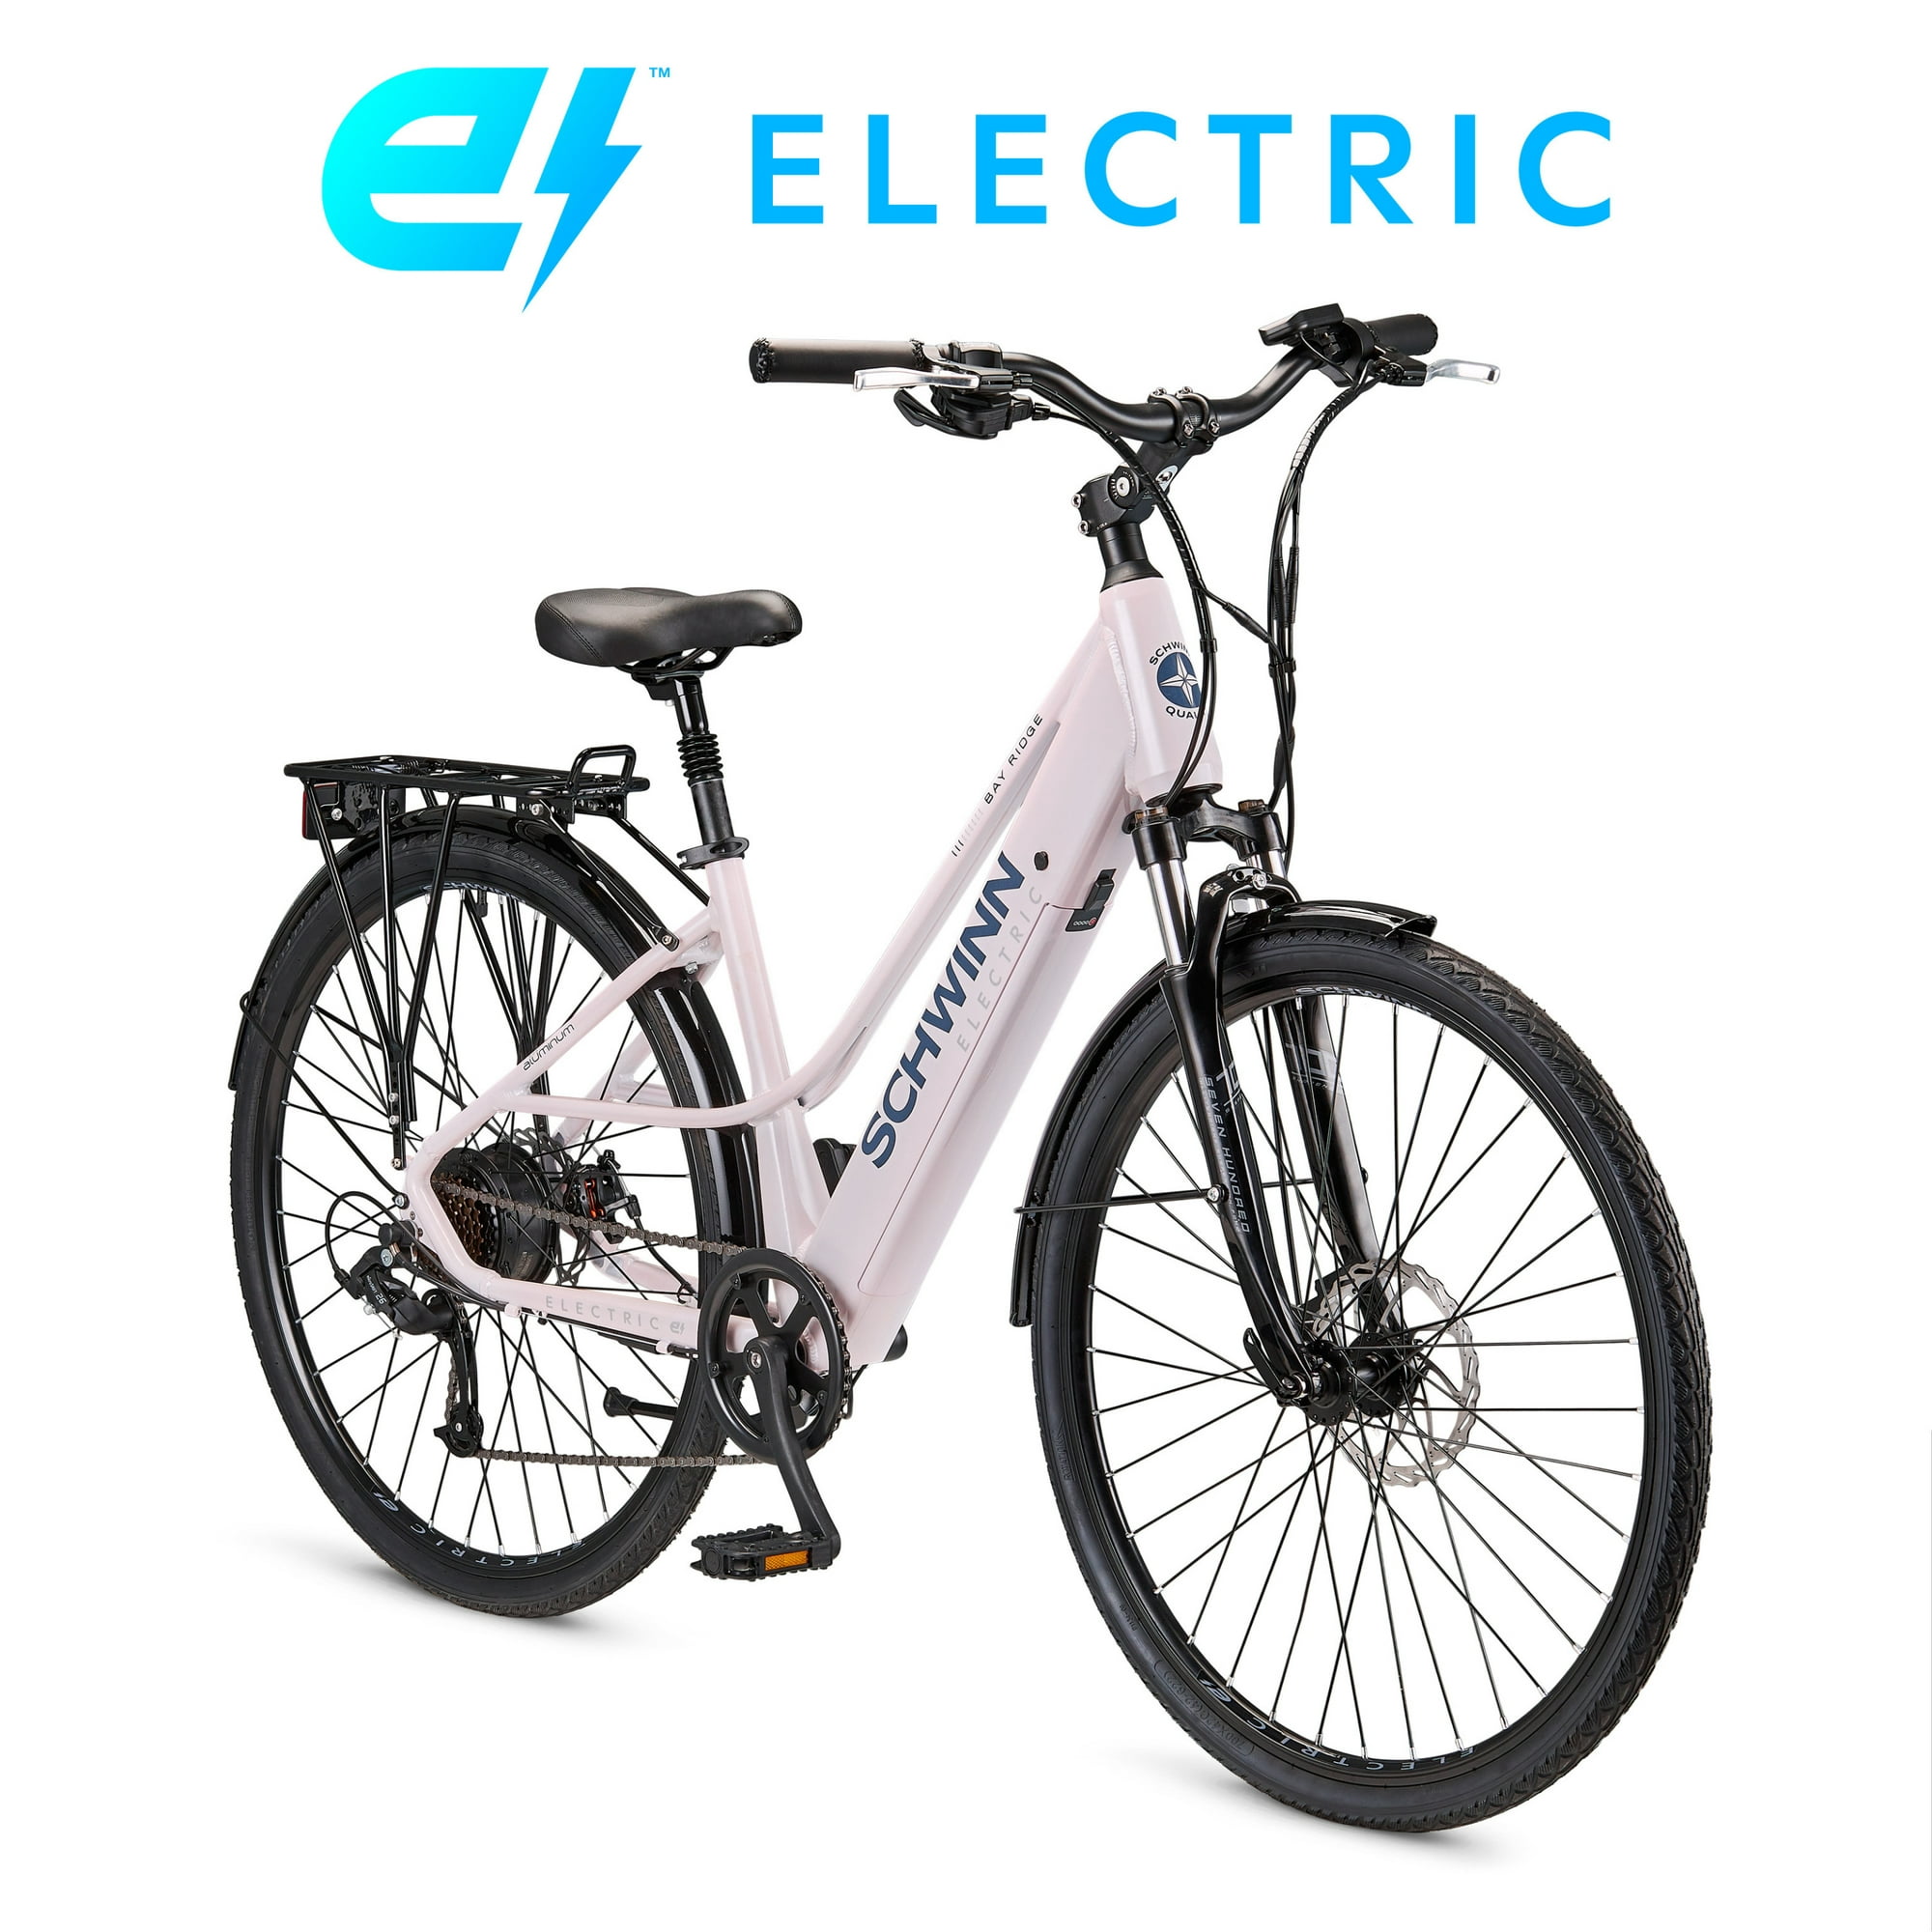 Schwinn 700c 7 Speeds, 250W Bay Ridge Hybrid Electric Bike